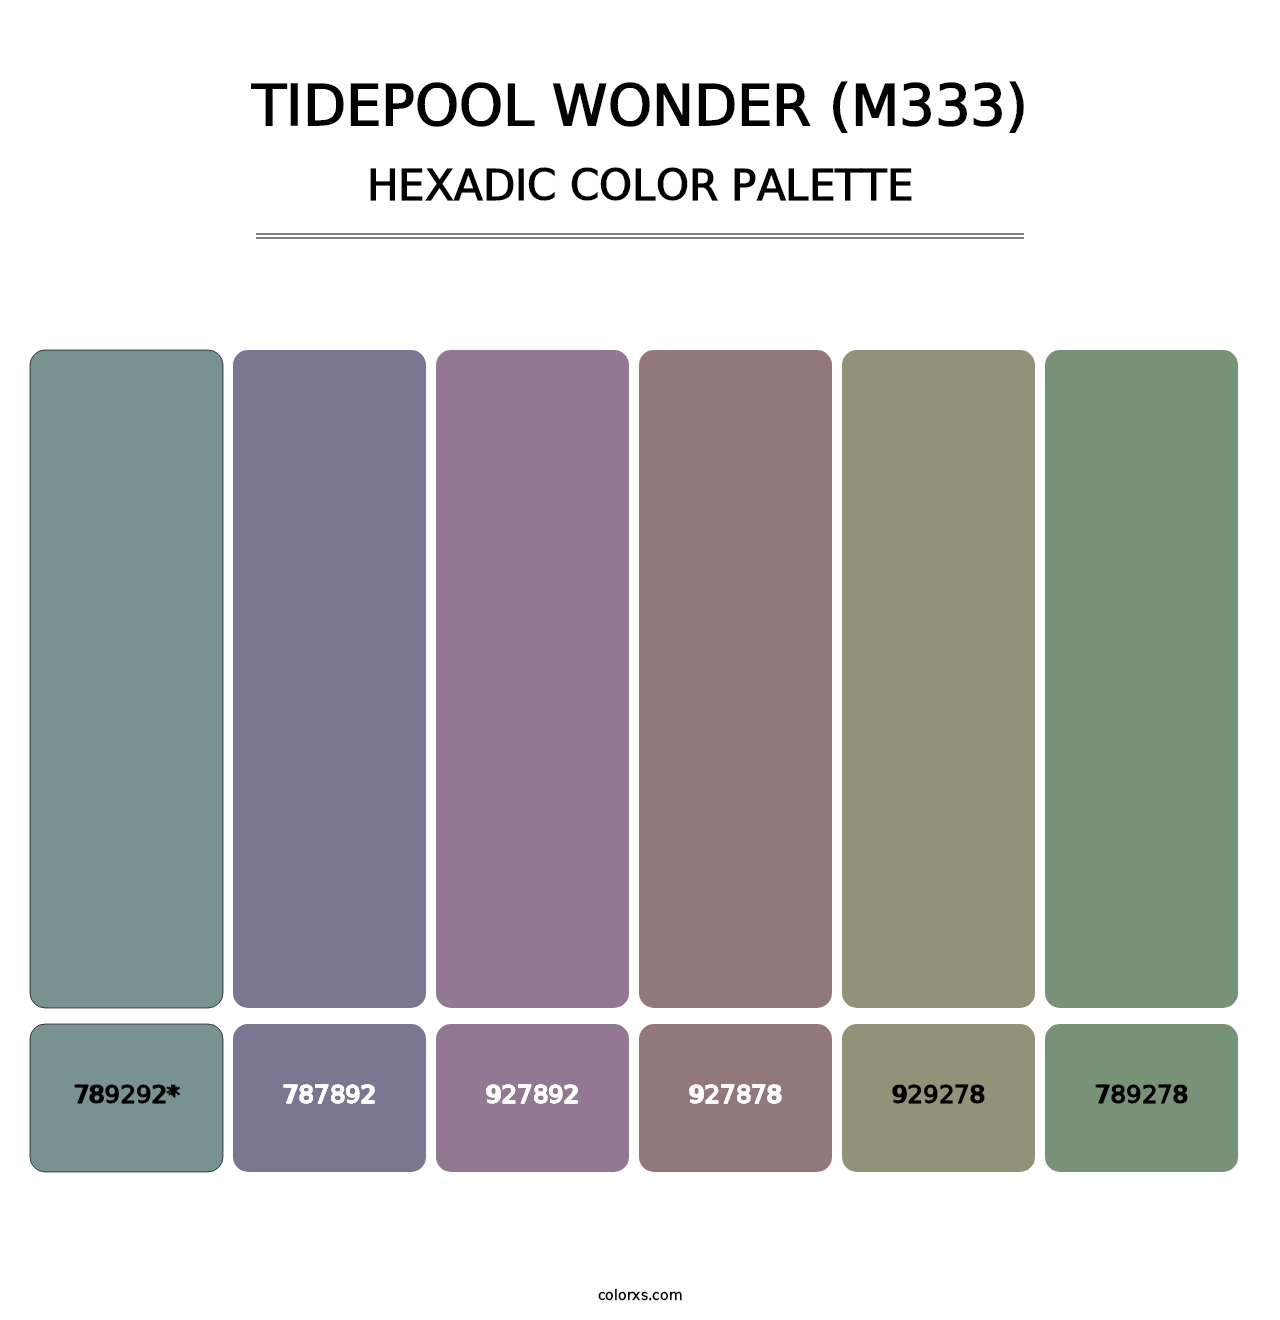 Tidepool Wonder (M333) - Hexadic Color Palette